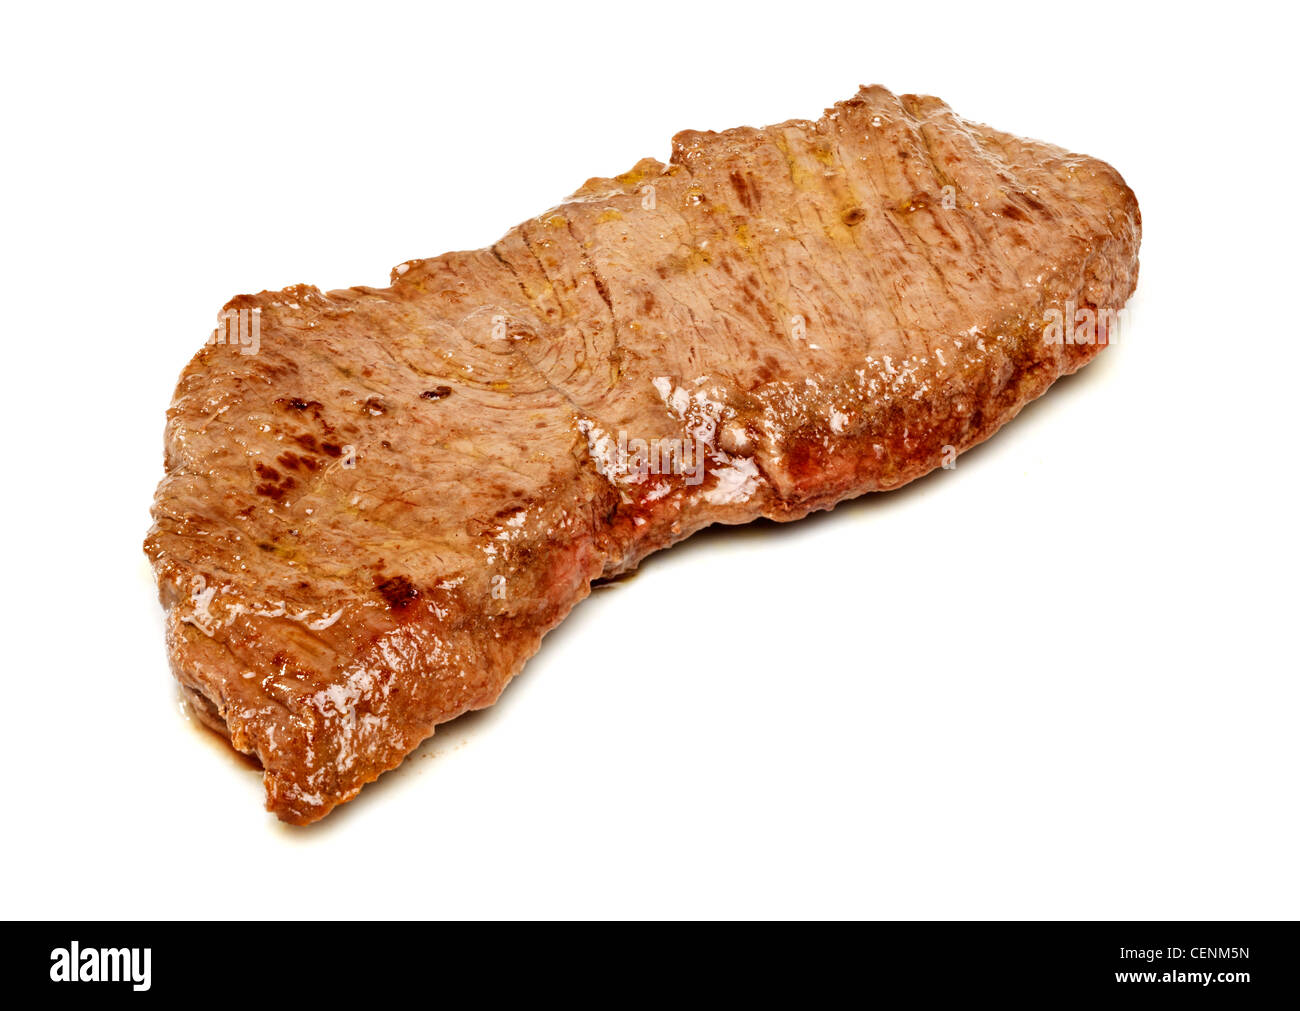 File:Longhorn Steakhouse Cutlery.jpg - Wikimedia Commons